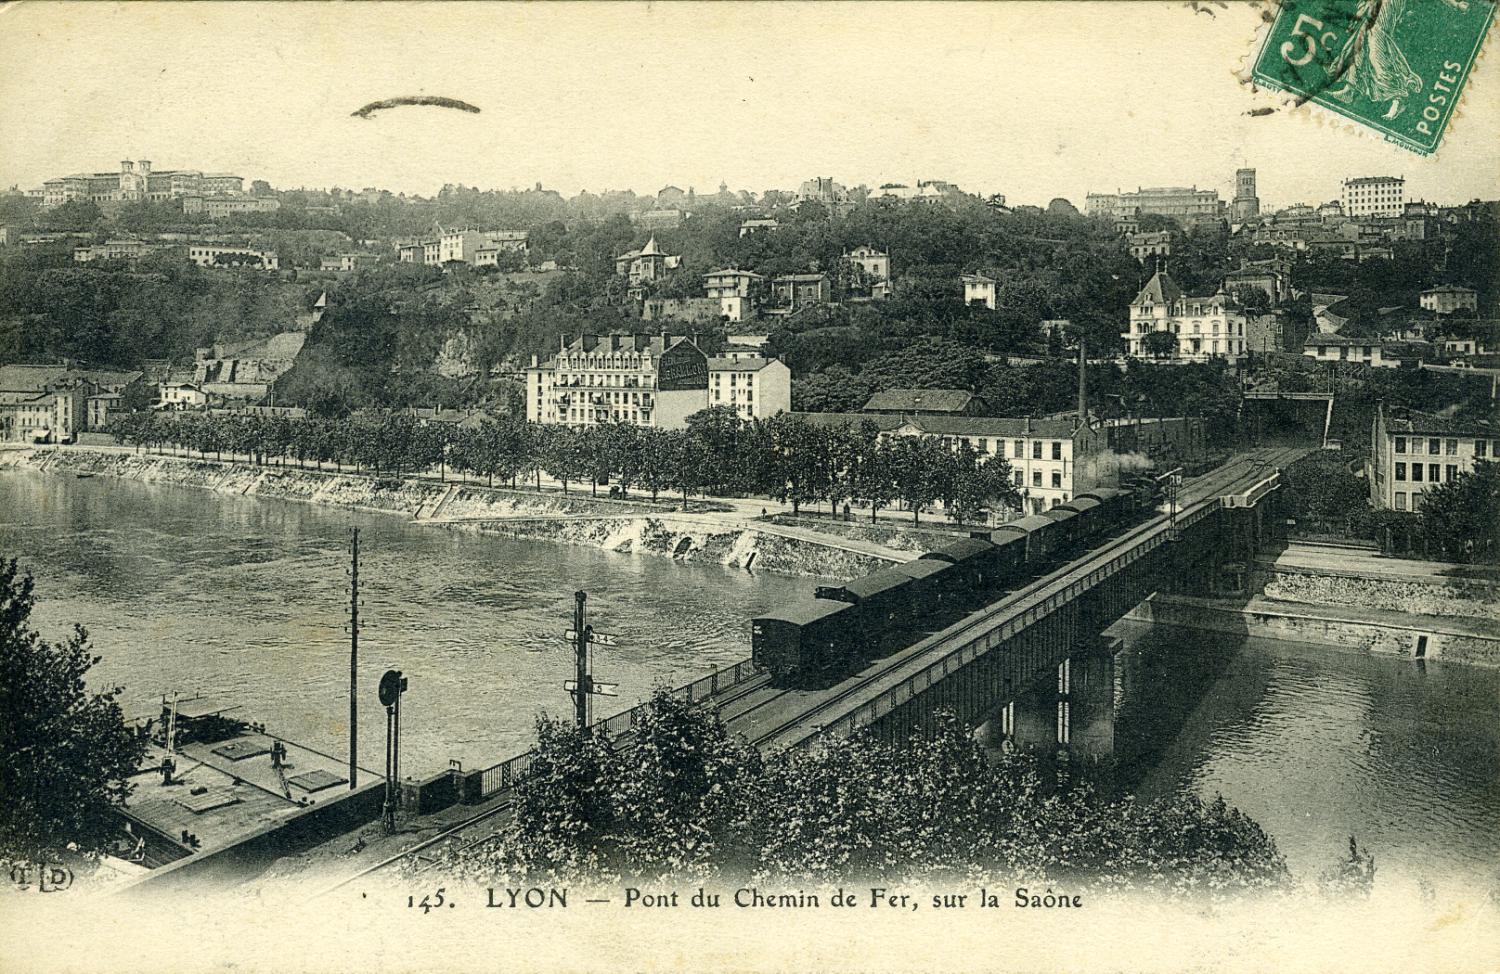 LYON. - Pont du Chemin de Fer, sur la Saône